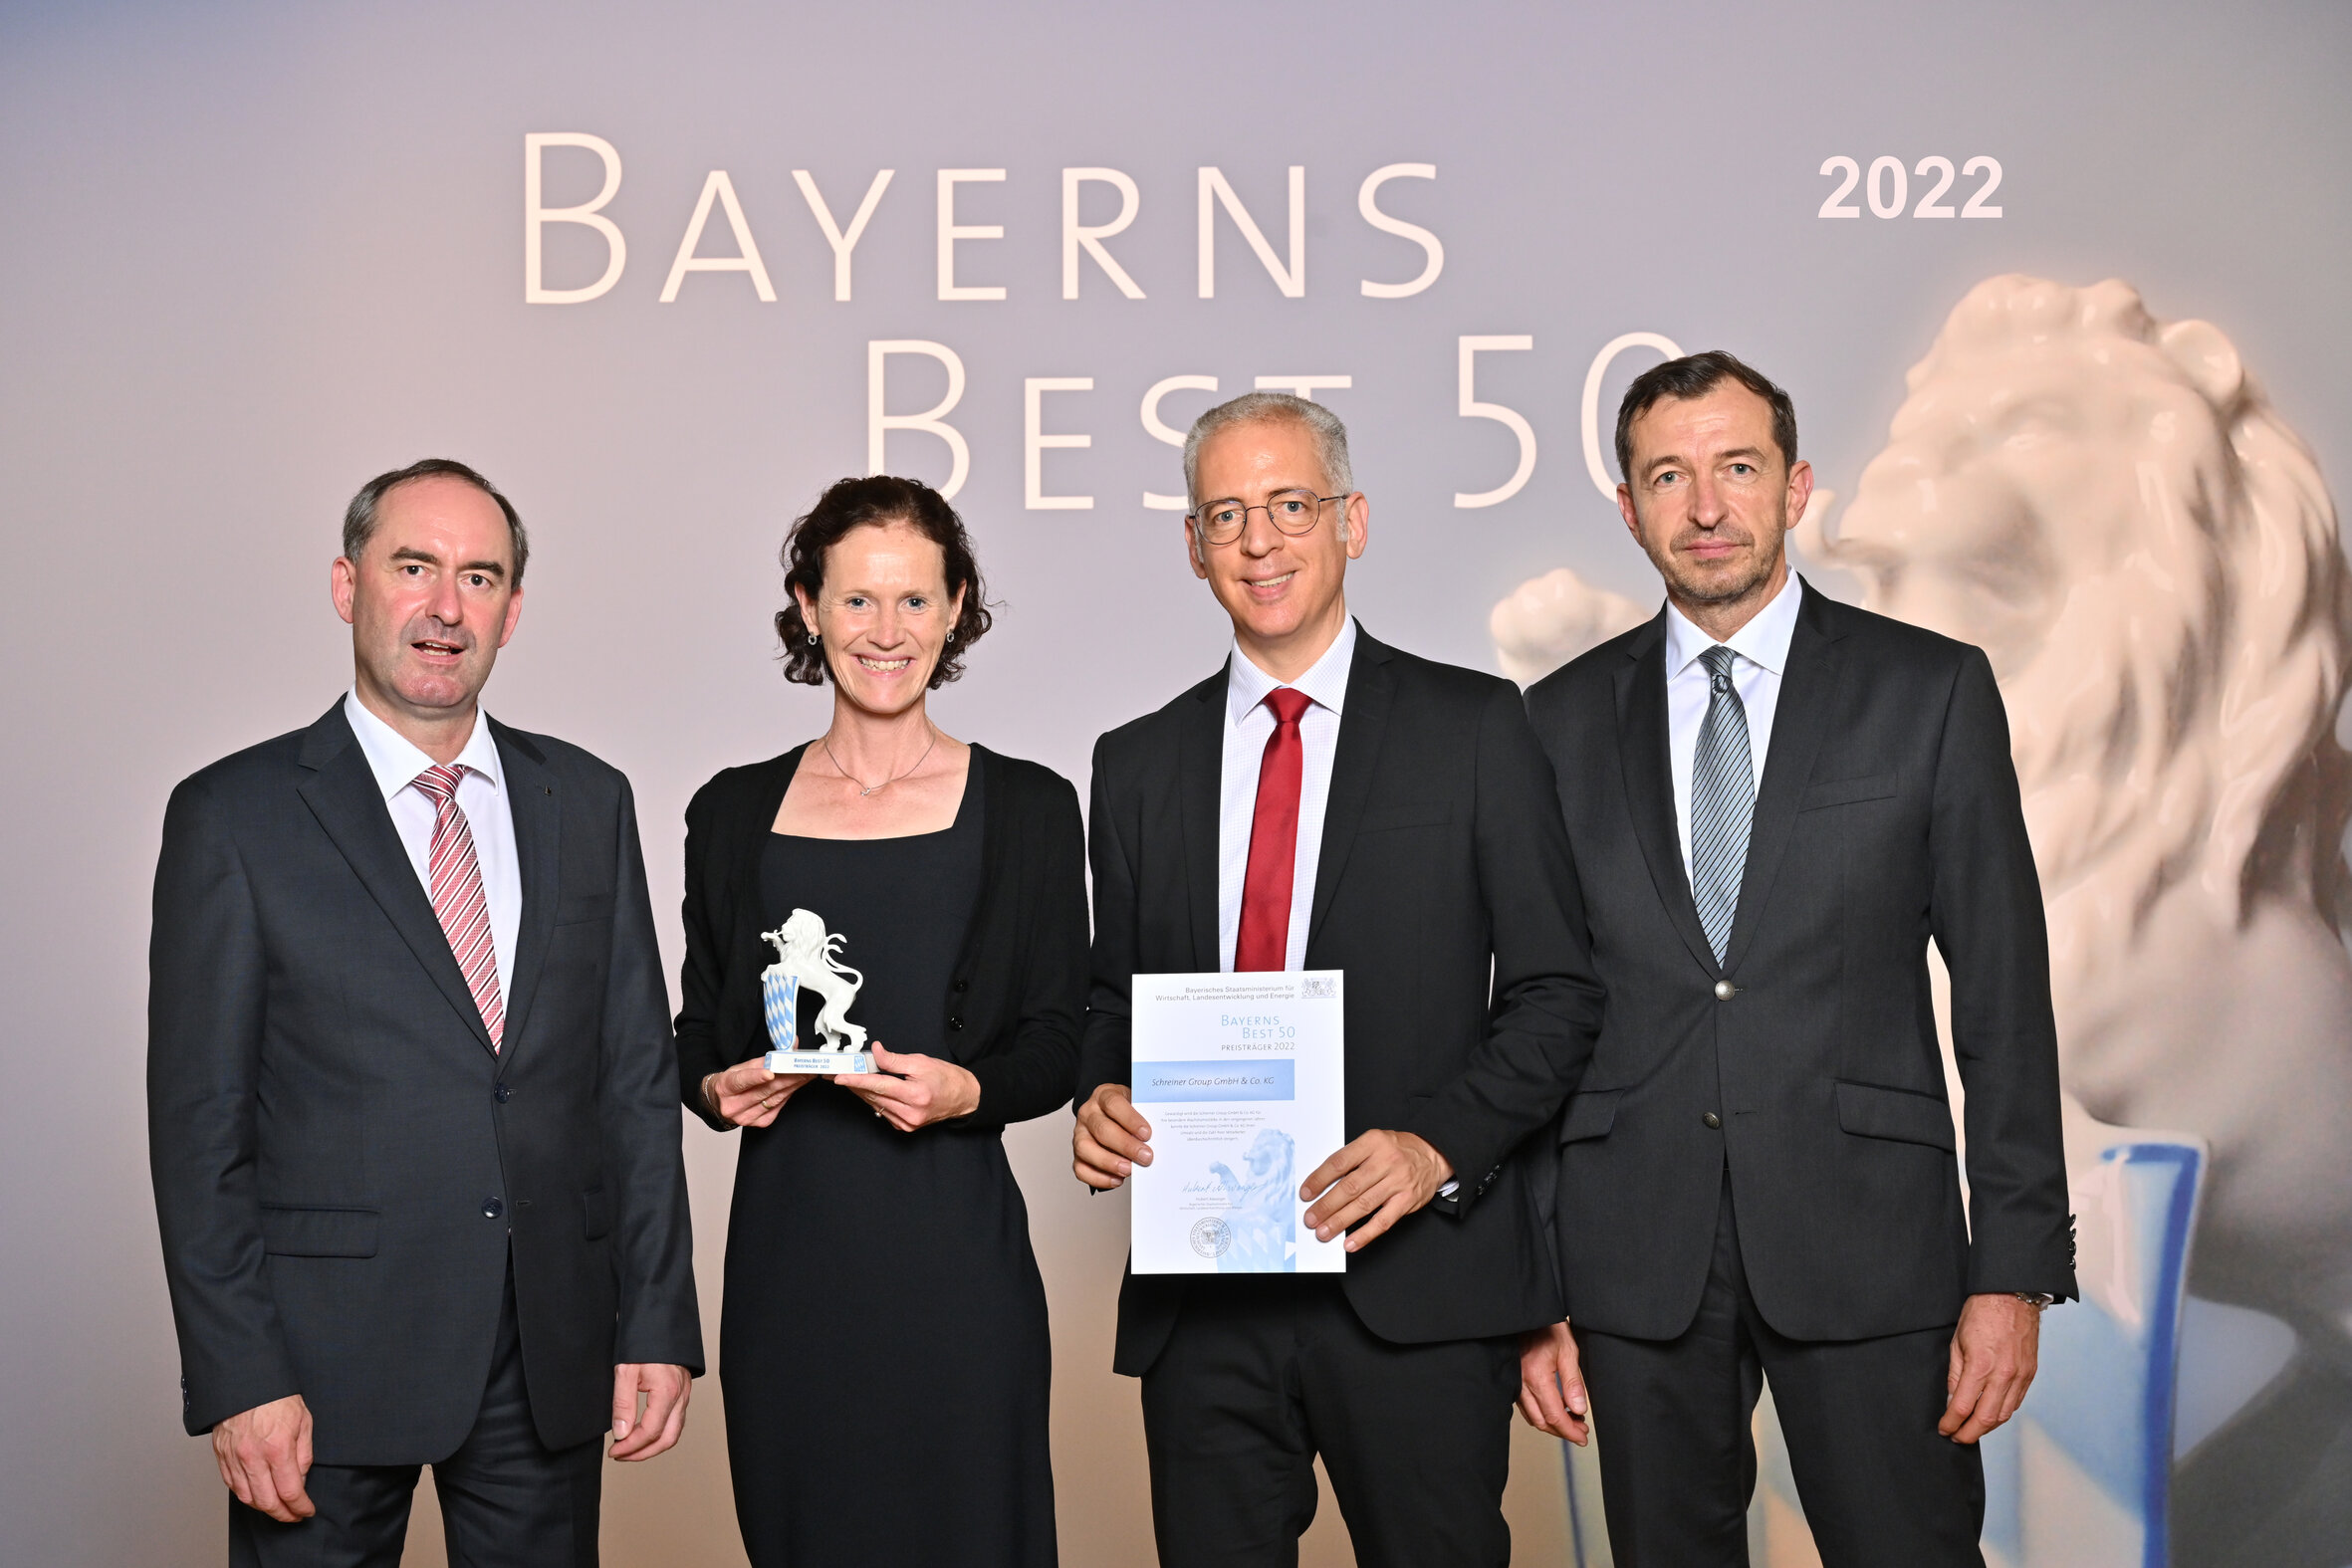 Große Freude über die Auszeichnung „Bayerns Best 50“ im Schloss Schleißheim: